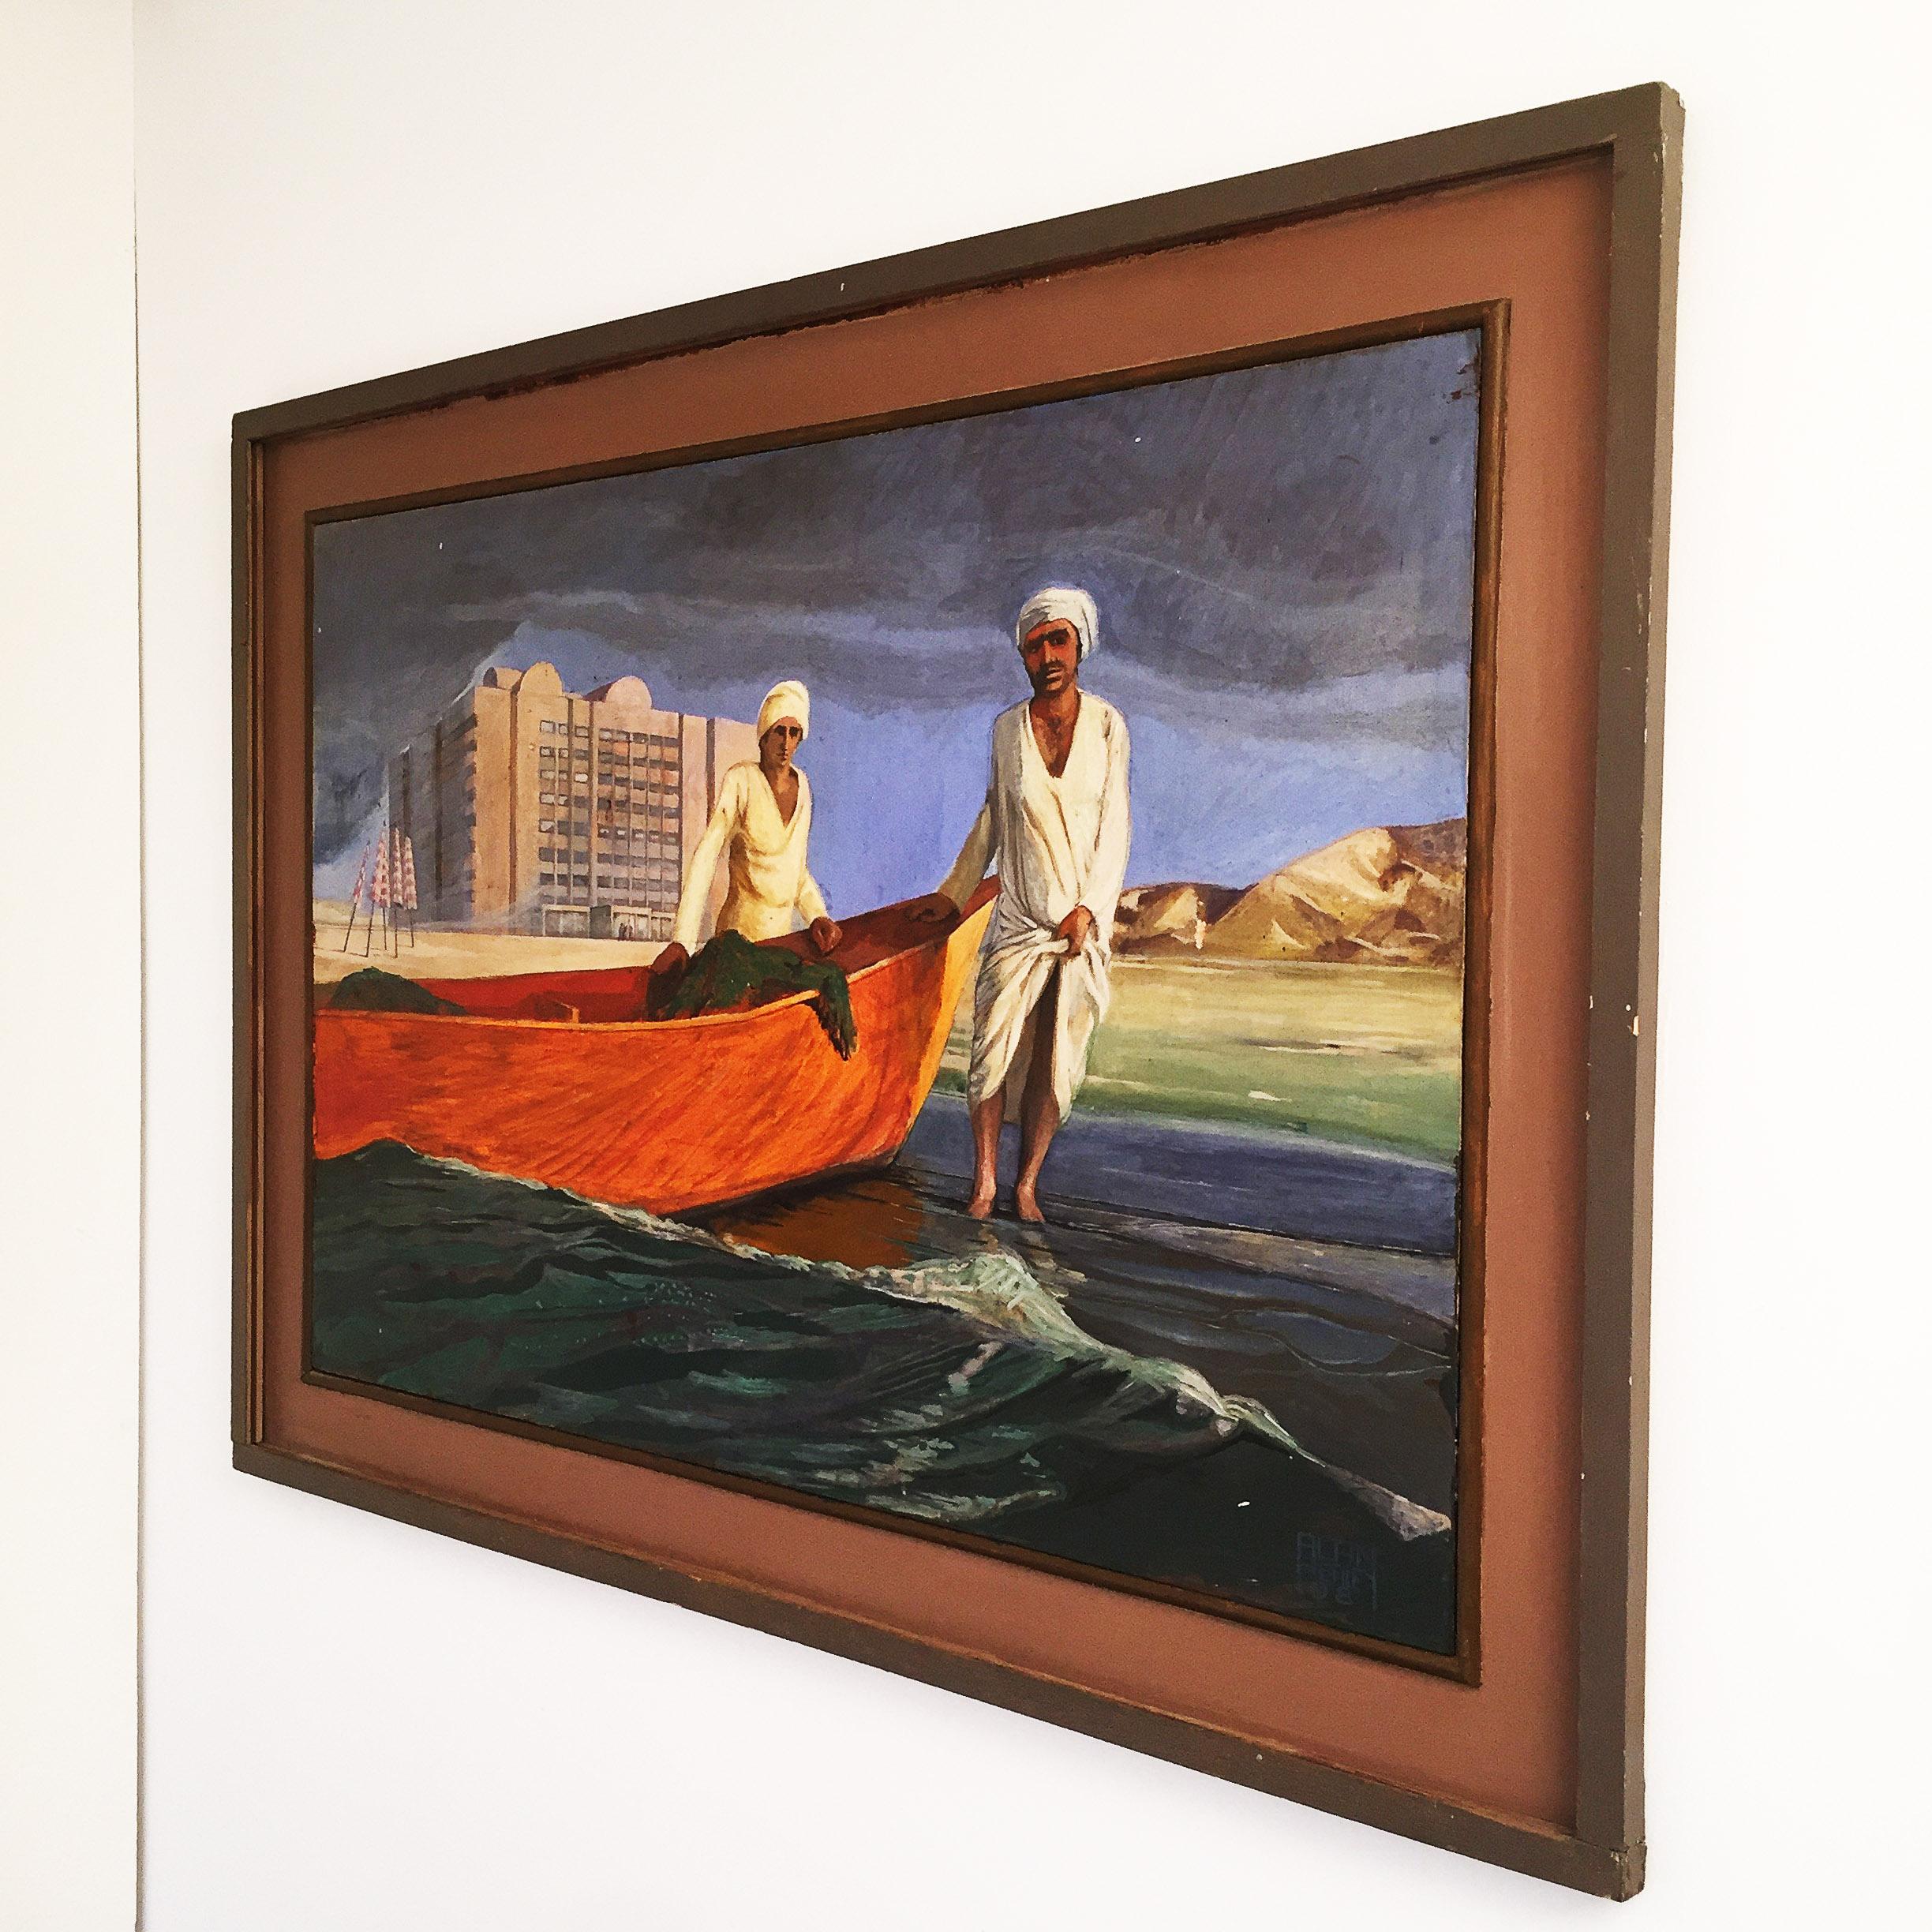 Ce tableau d'arabesques vintage, signé par Alan Healey et peint au début des années 1980, représente deux hommes nord-africains tirant leur bateau de la mer pour pêcher. En arrière-plan se trouve un grand bâtiment, peut-être un hôtel, avec des